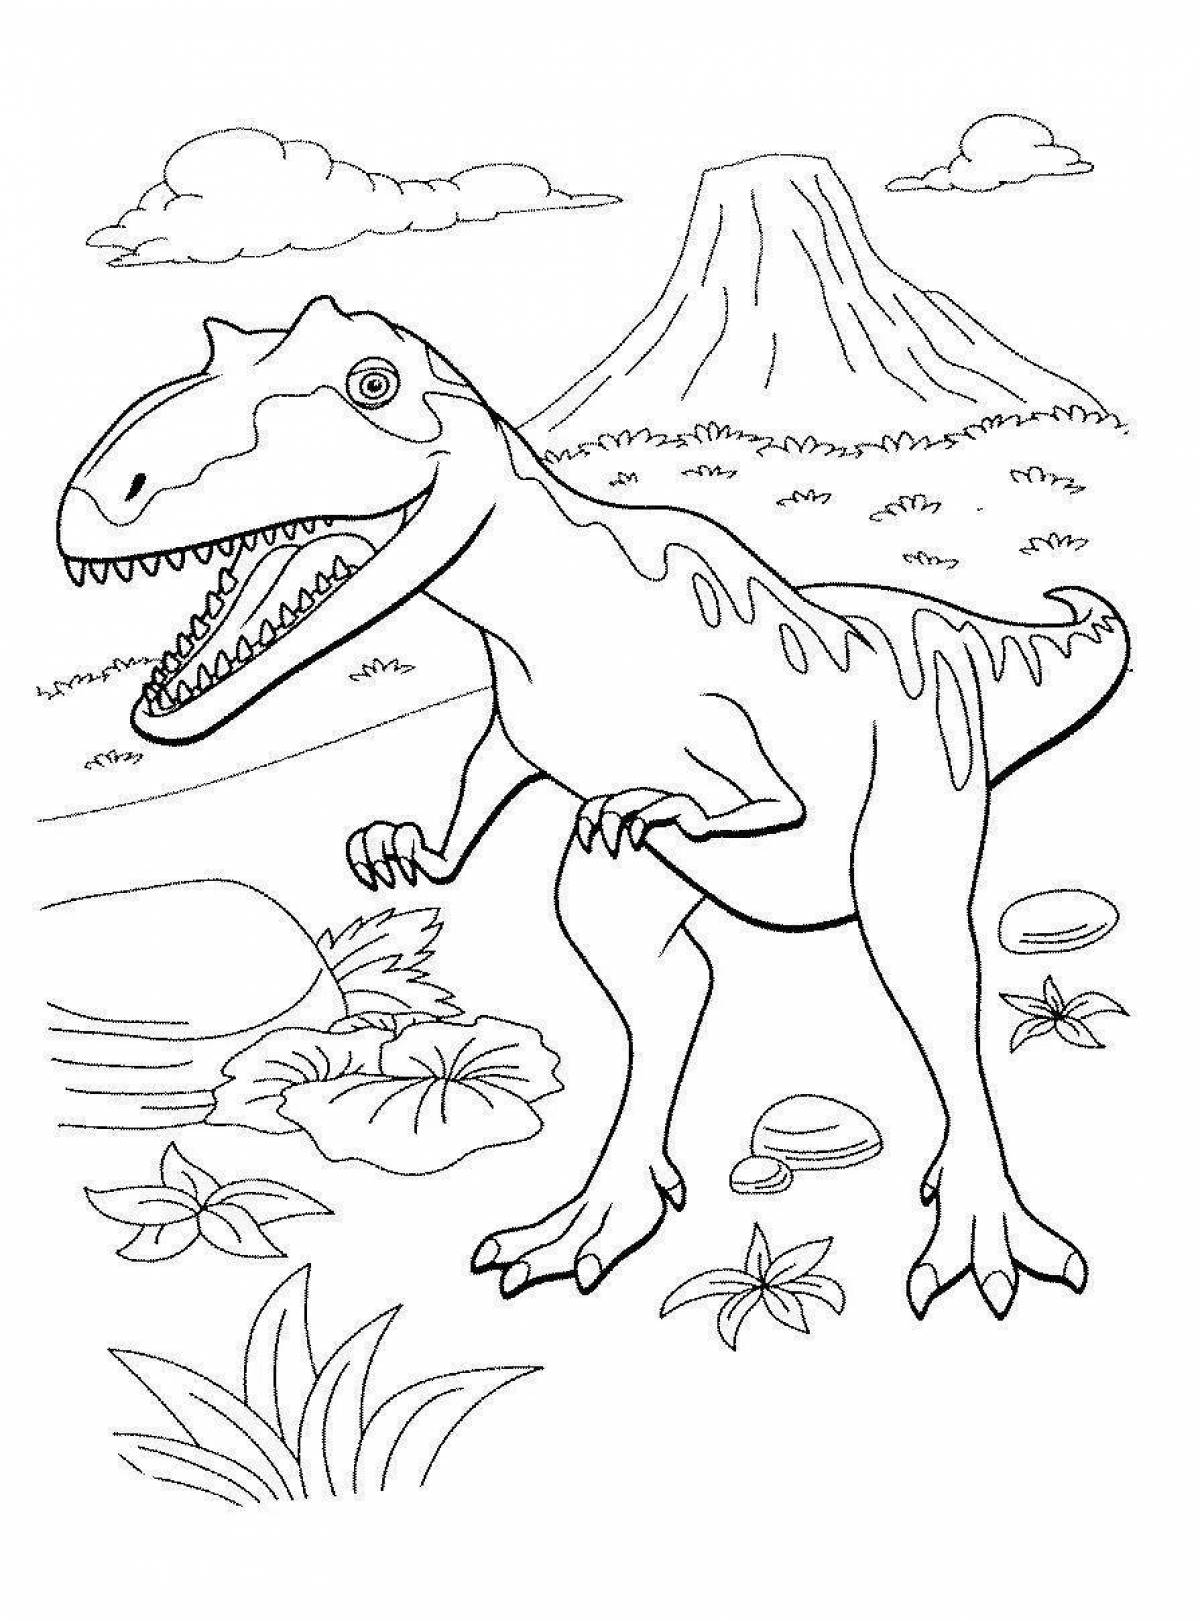 Смелый динозавр раскраски pdf